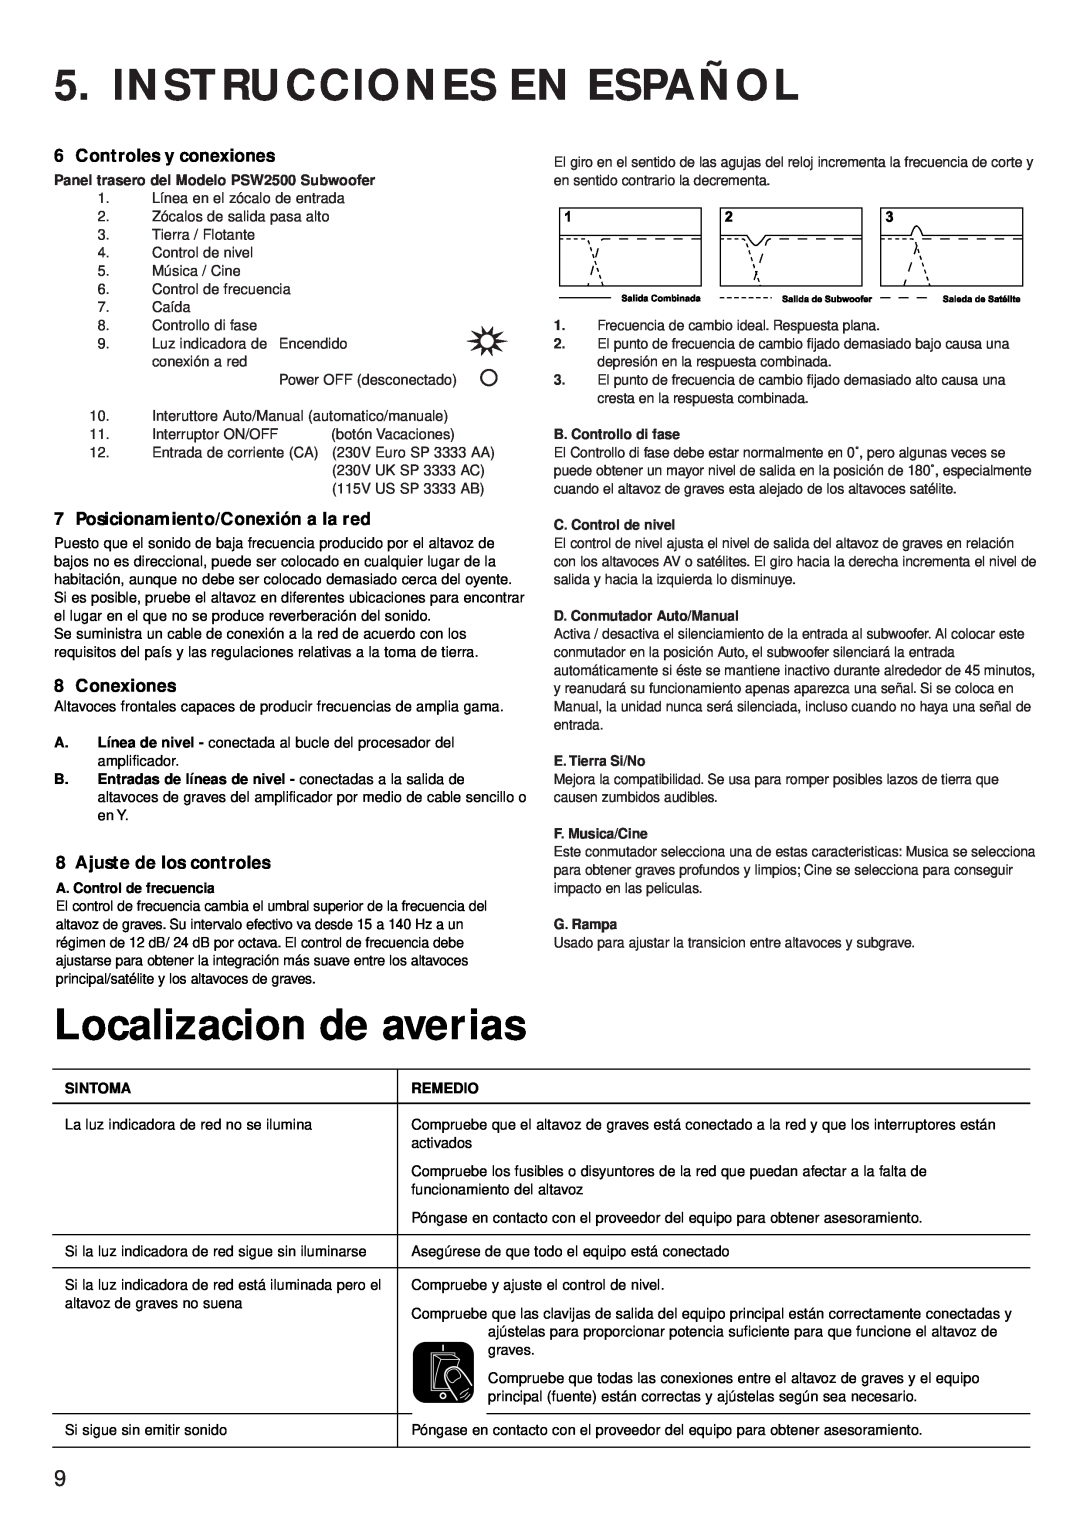 KEF Audio PSW 2500 Instrucciones En Español, Localizacion de averias, Controles y conexiones, Conexiones, E. Tierra Si/No 